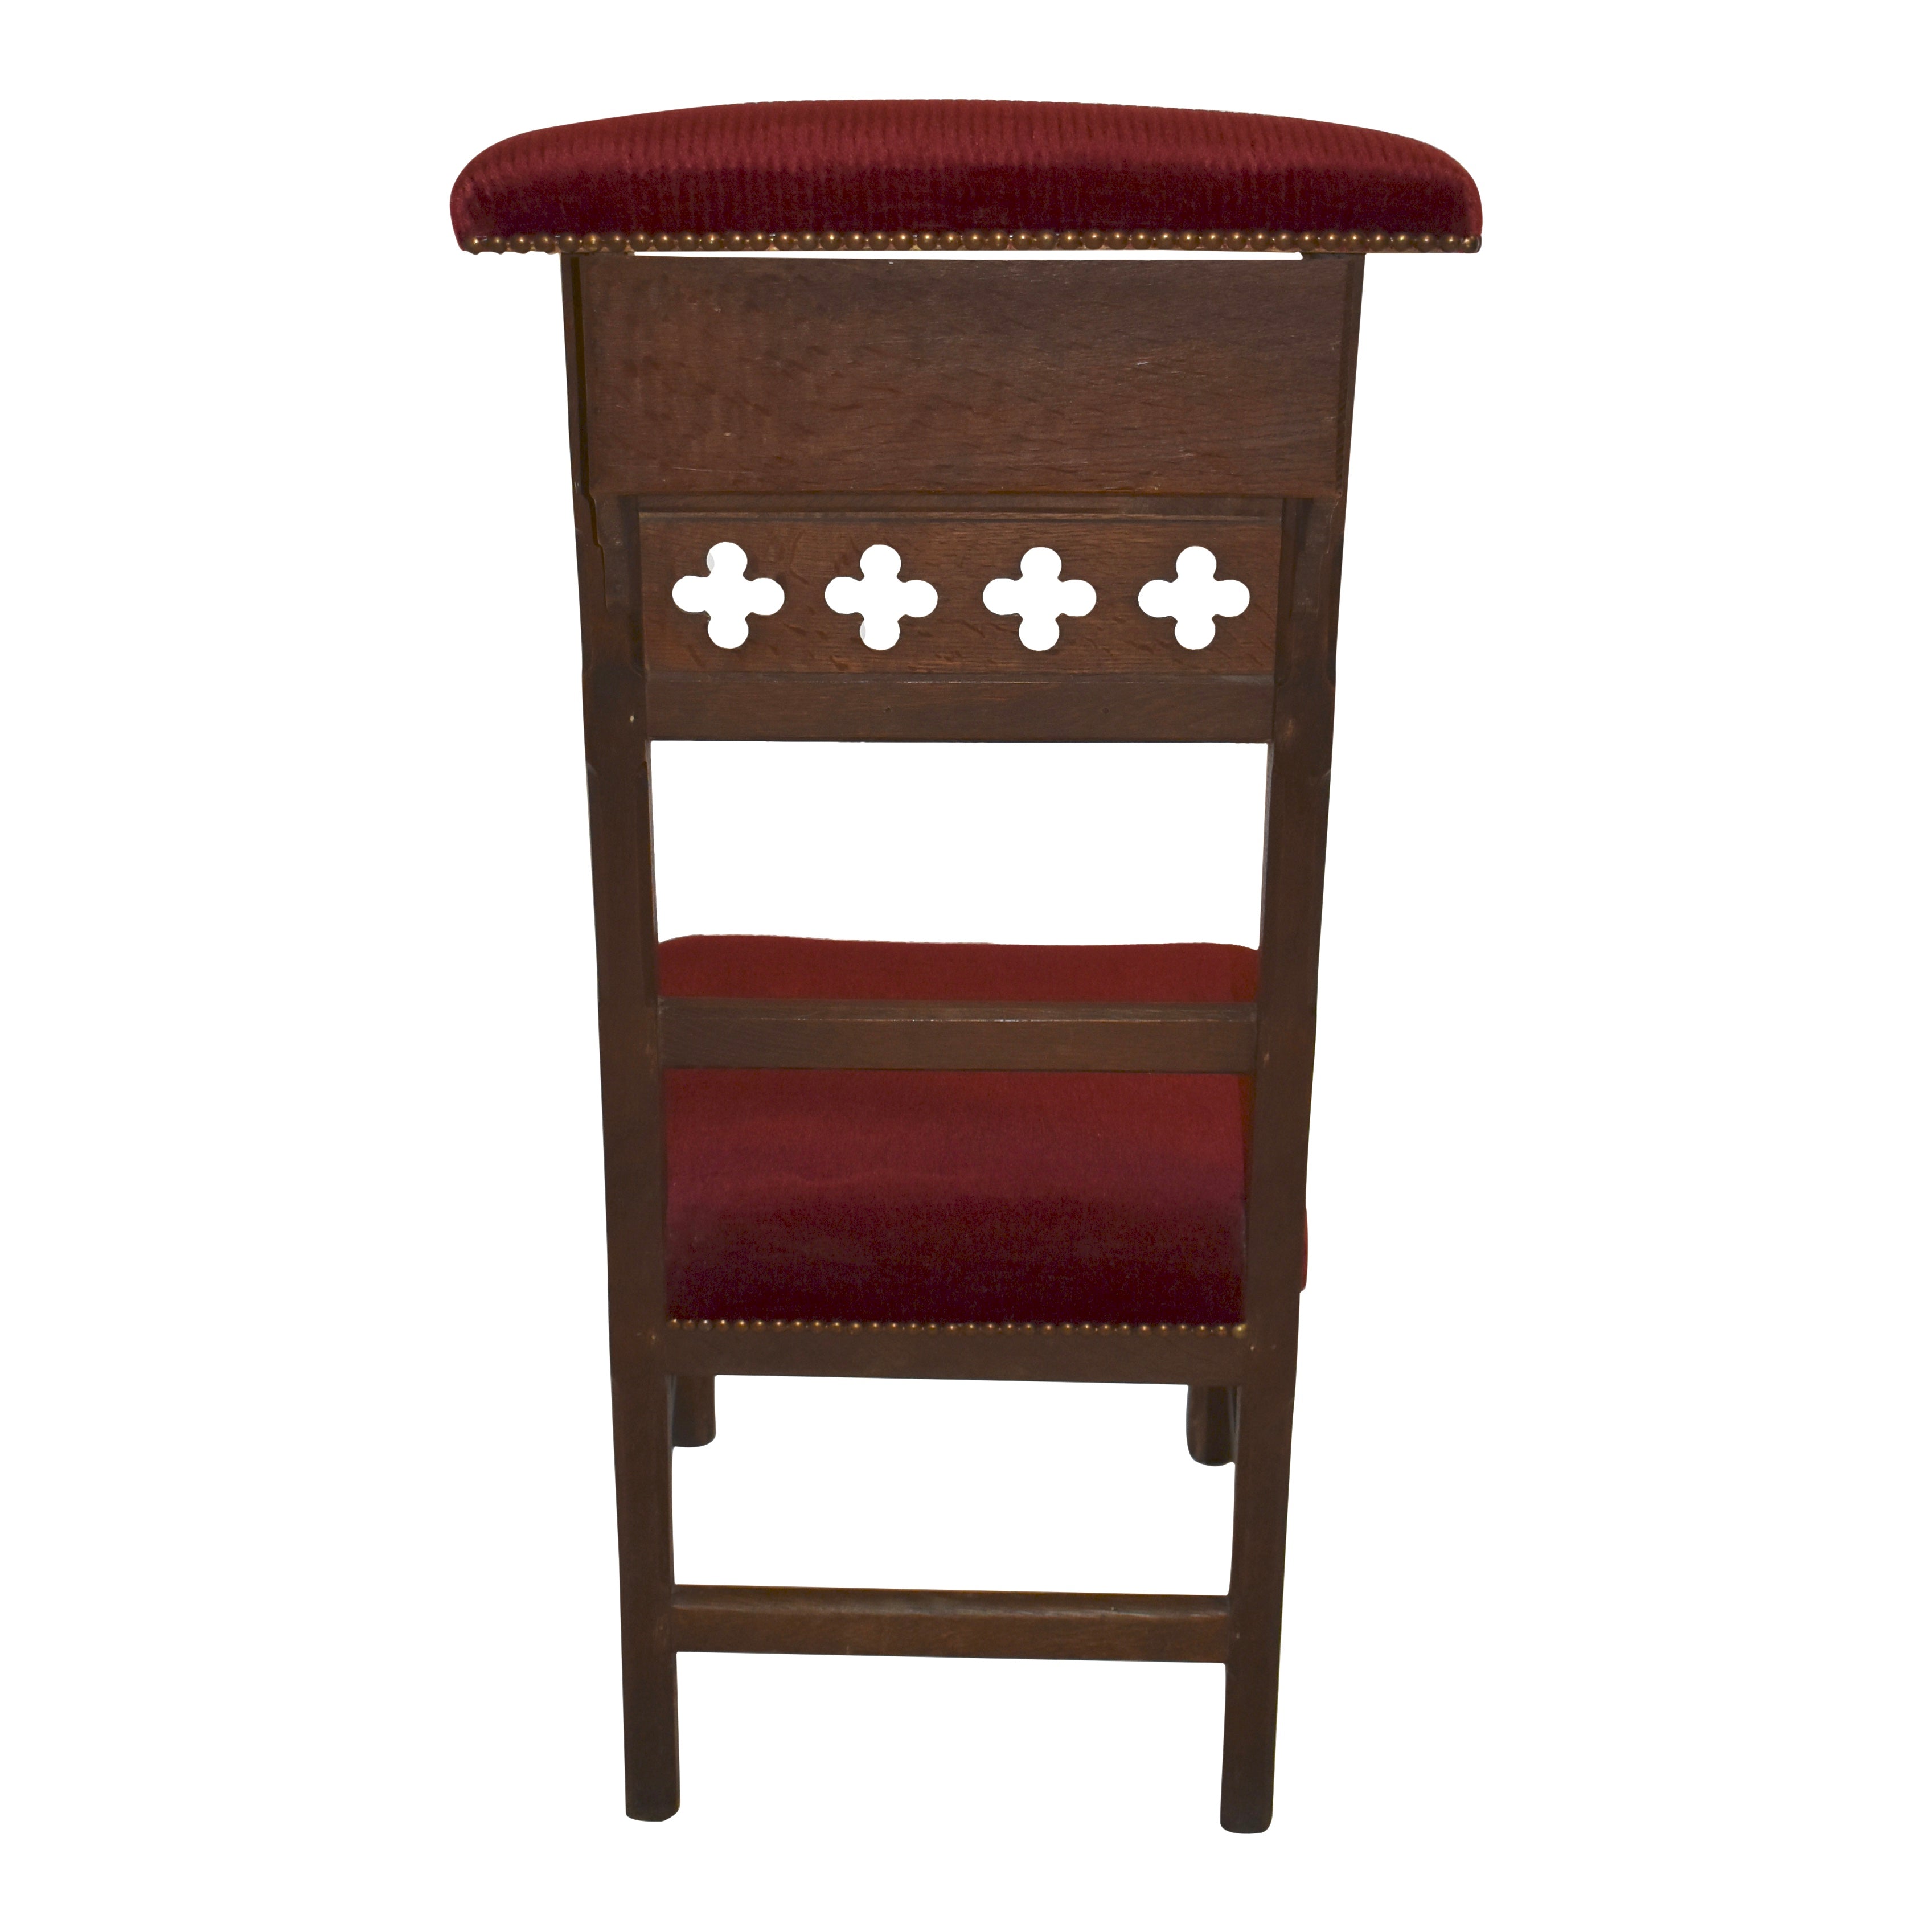 Gothic Prayer Chair Kneeler